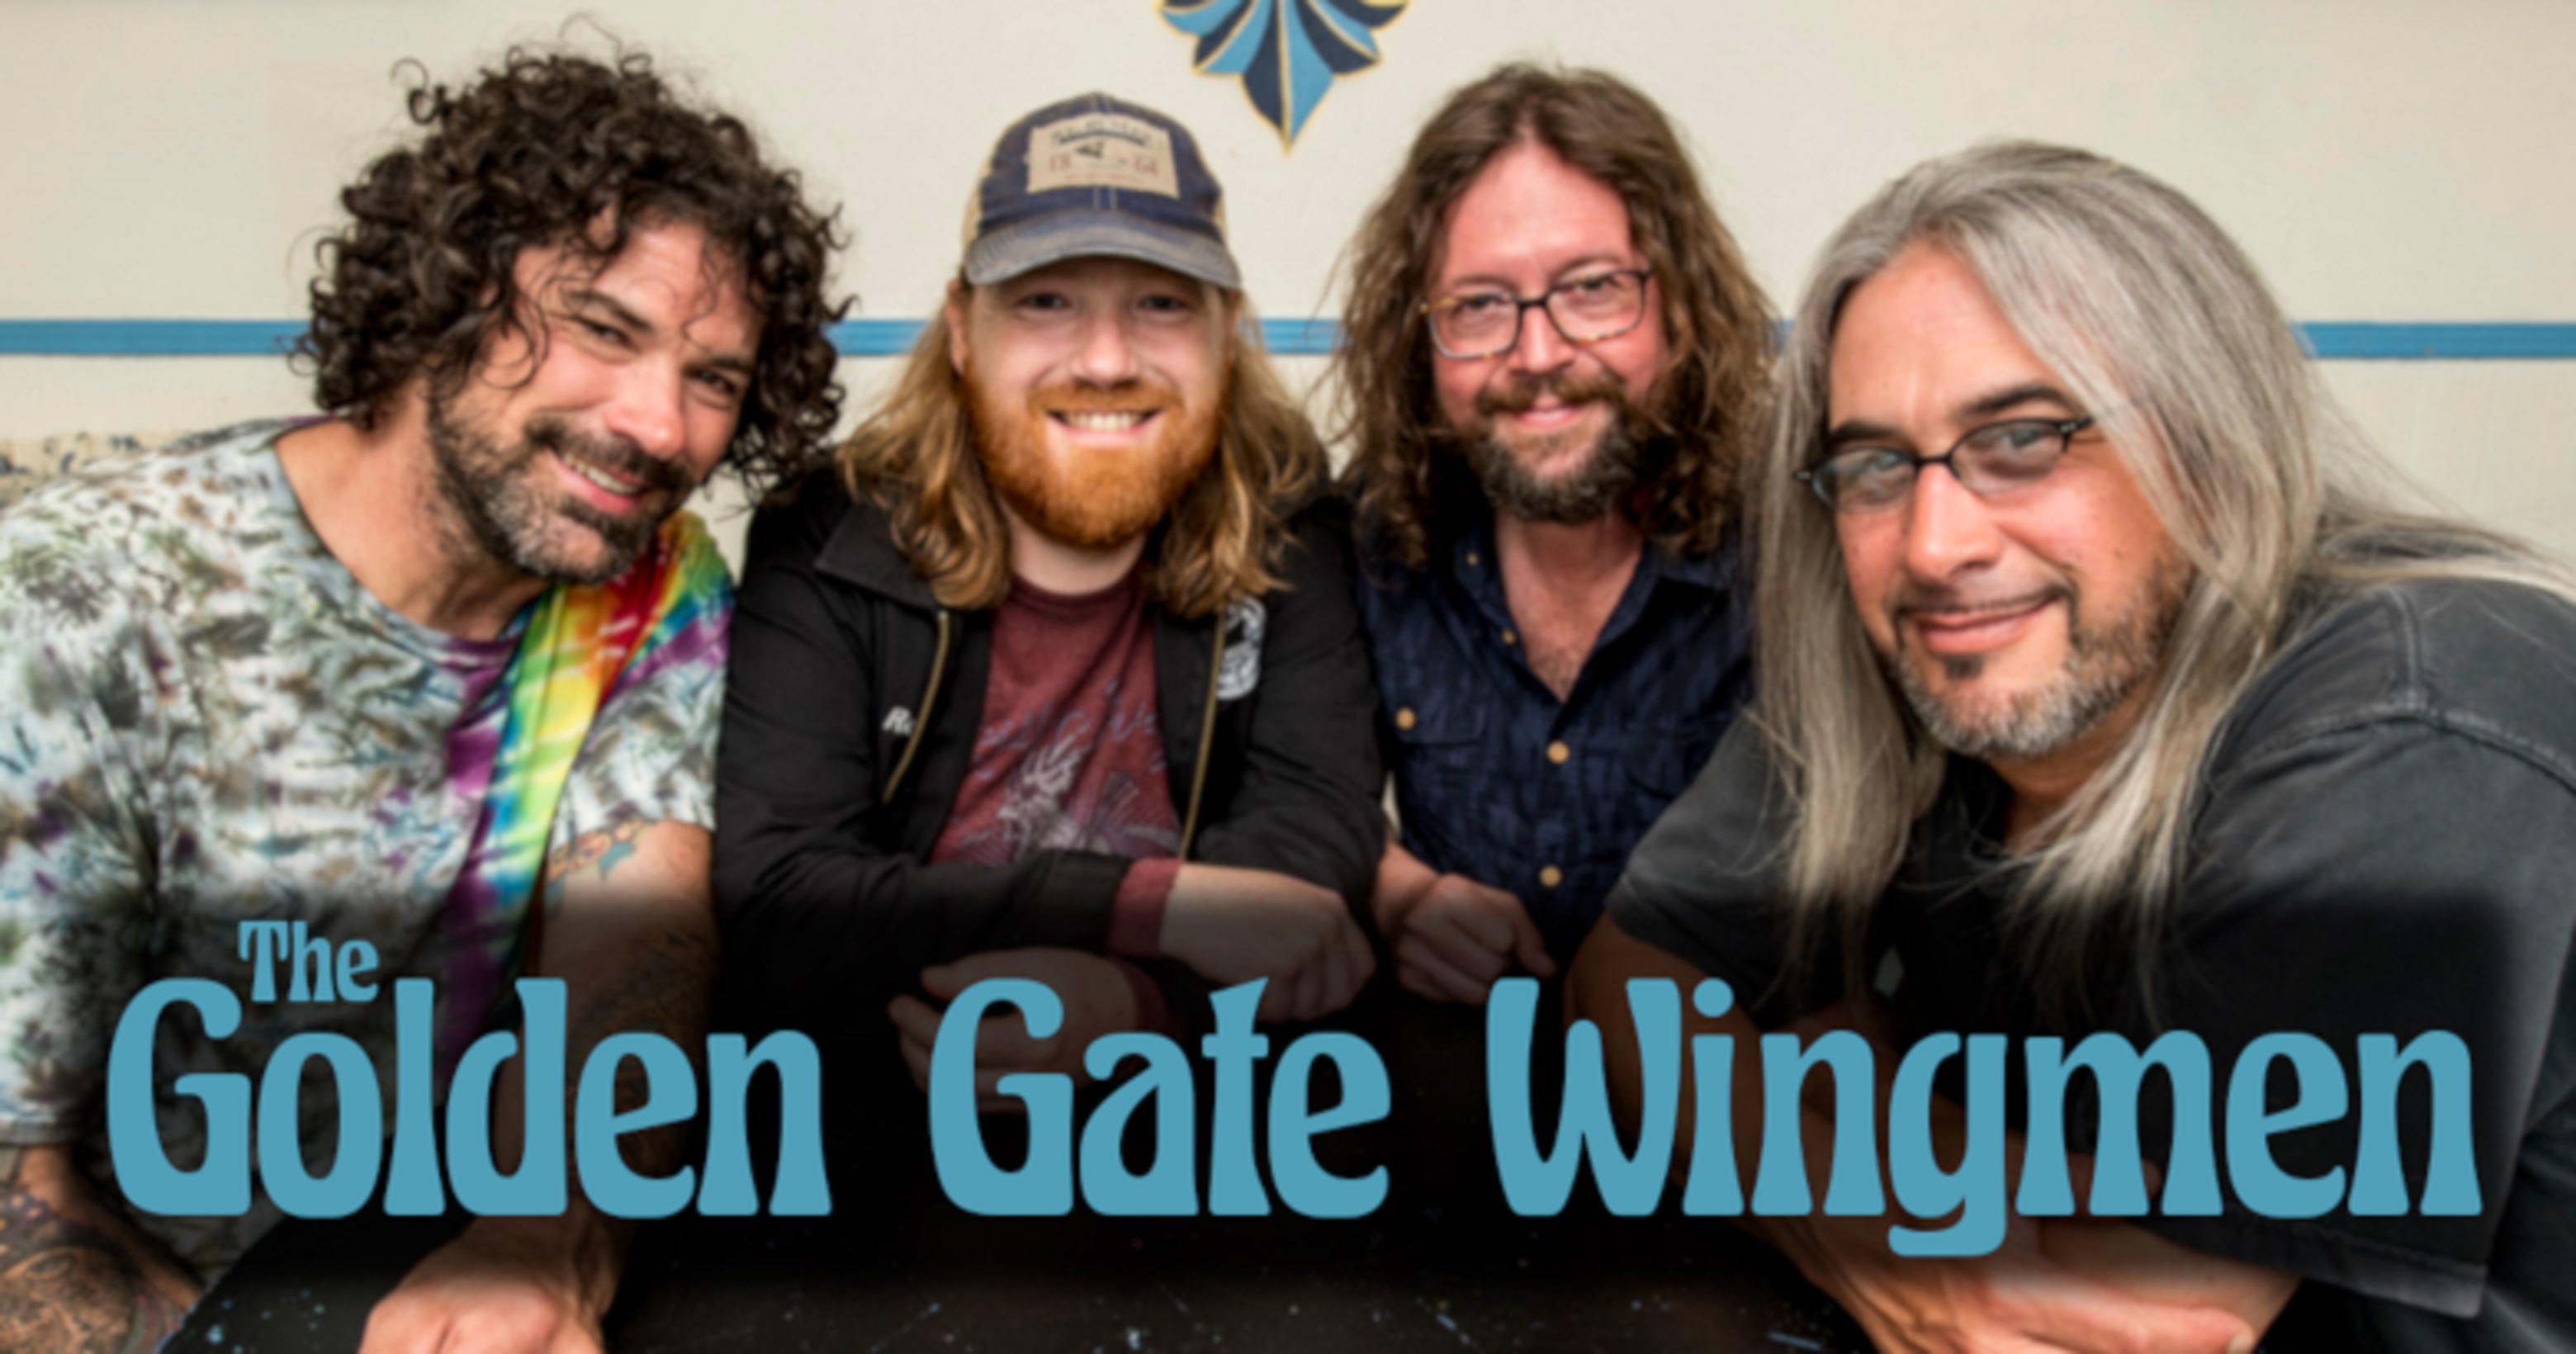 Golden Gate Wingmen Tour On Tour Now!